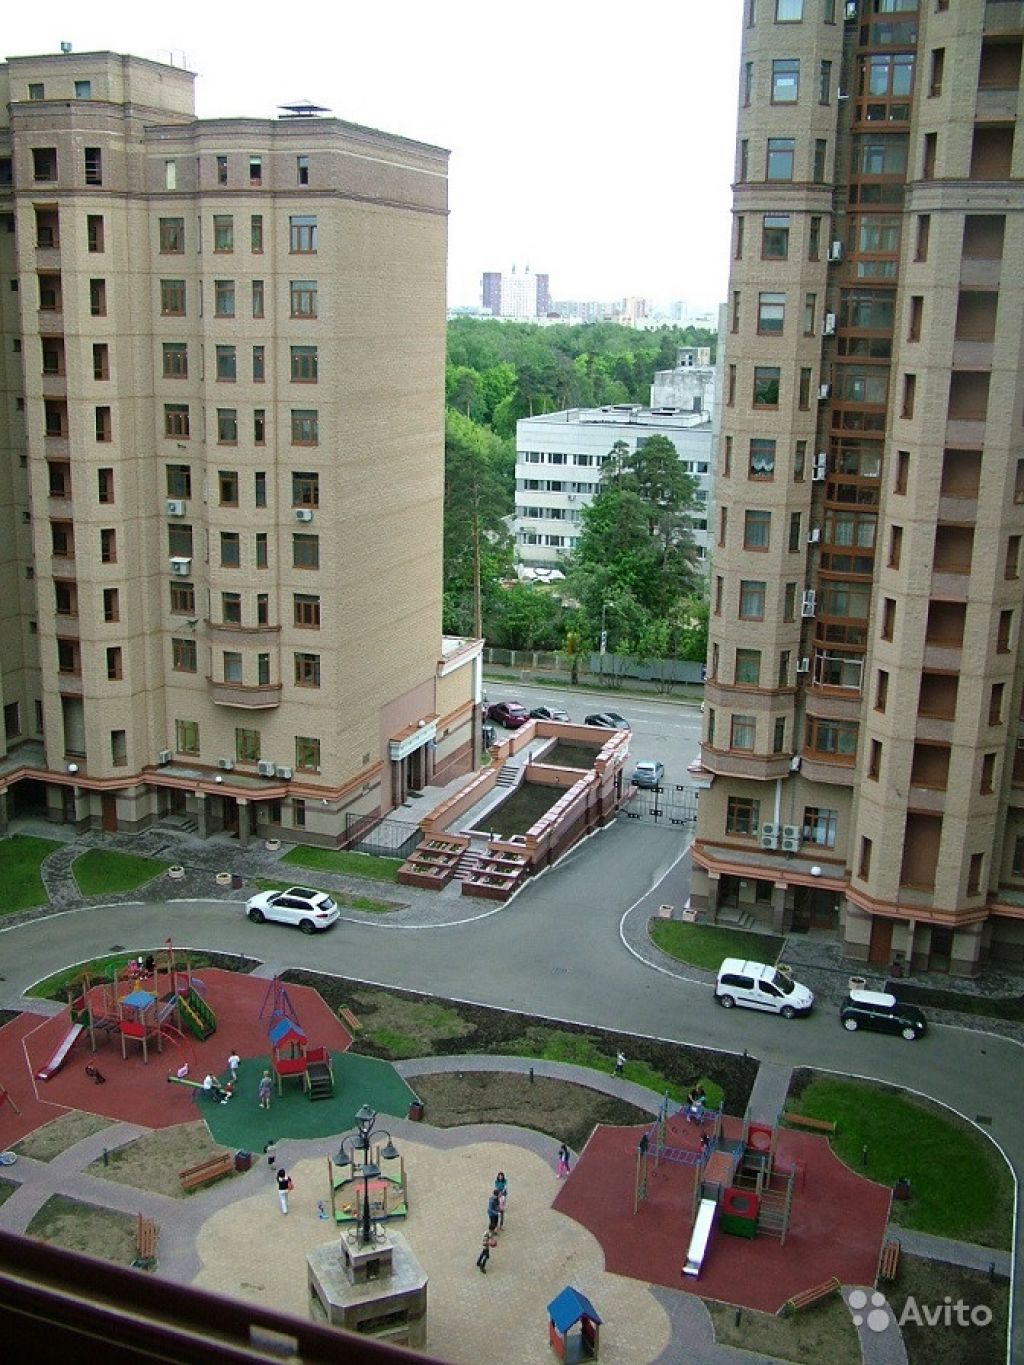 Сдам квартиру 3-к квартира 130 м² на 9 этаже 14-этажного монолитного дома в Москве. Фото 1